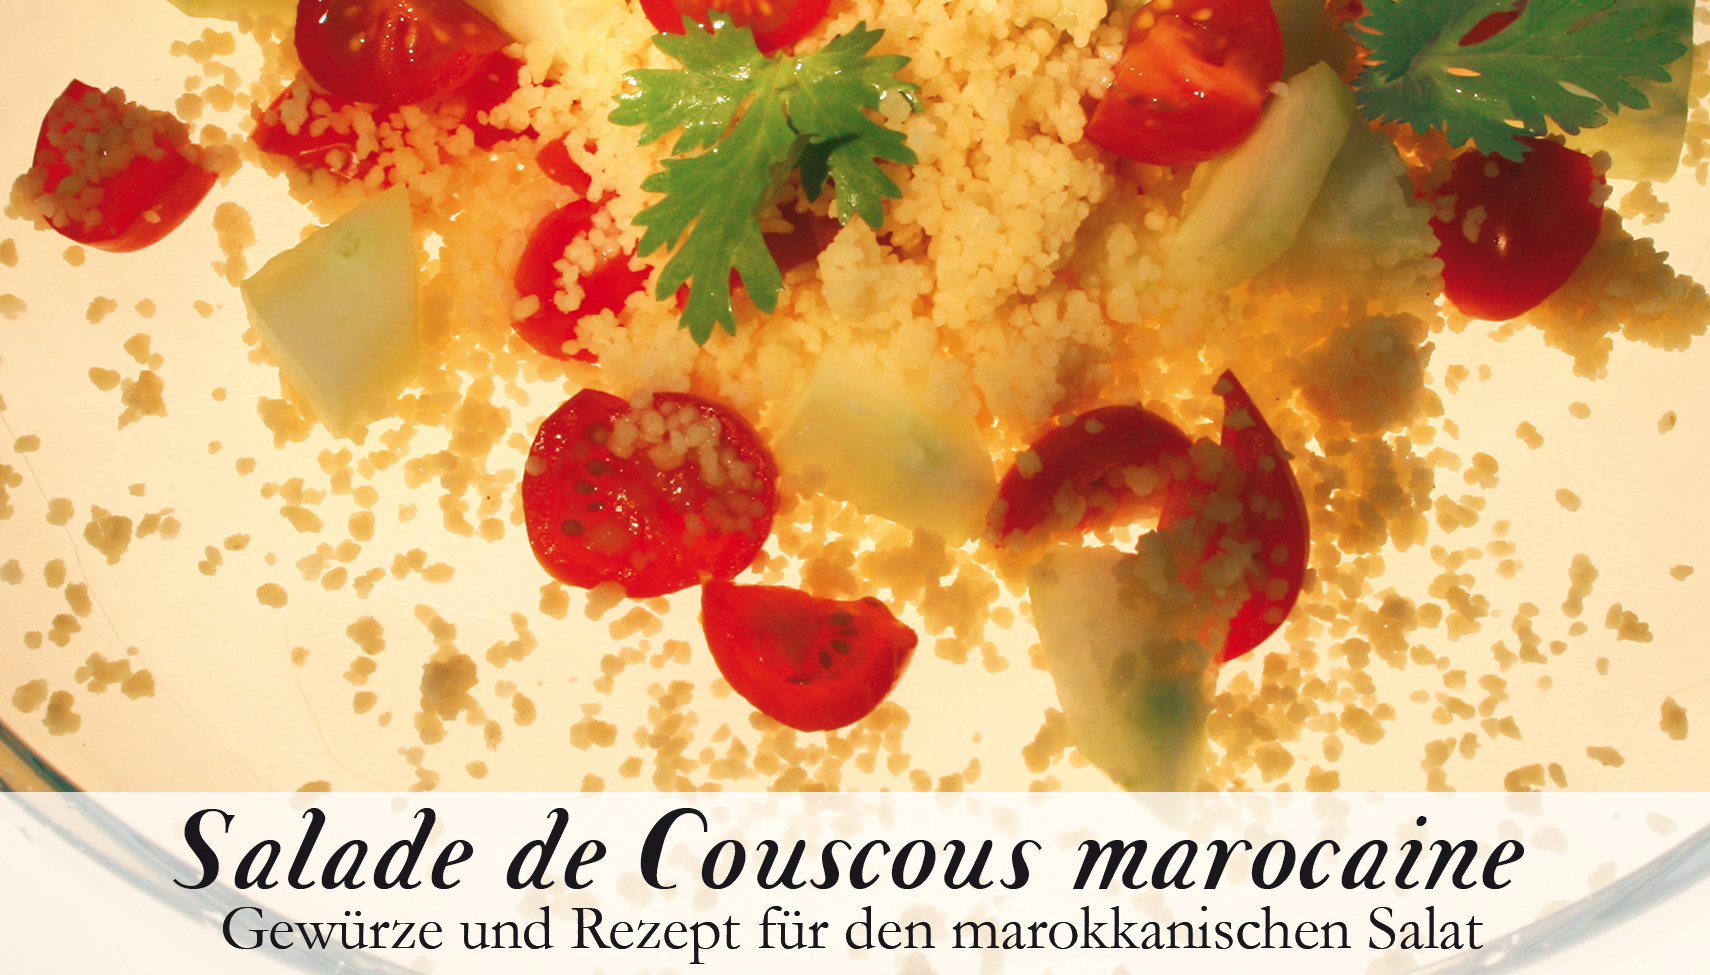 Salade de Couscous marocaine-Gewürzkasten